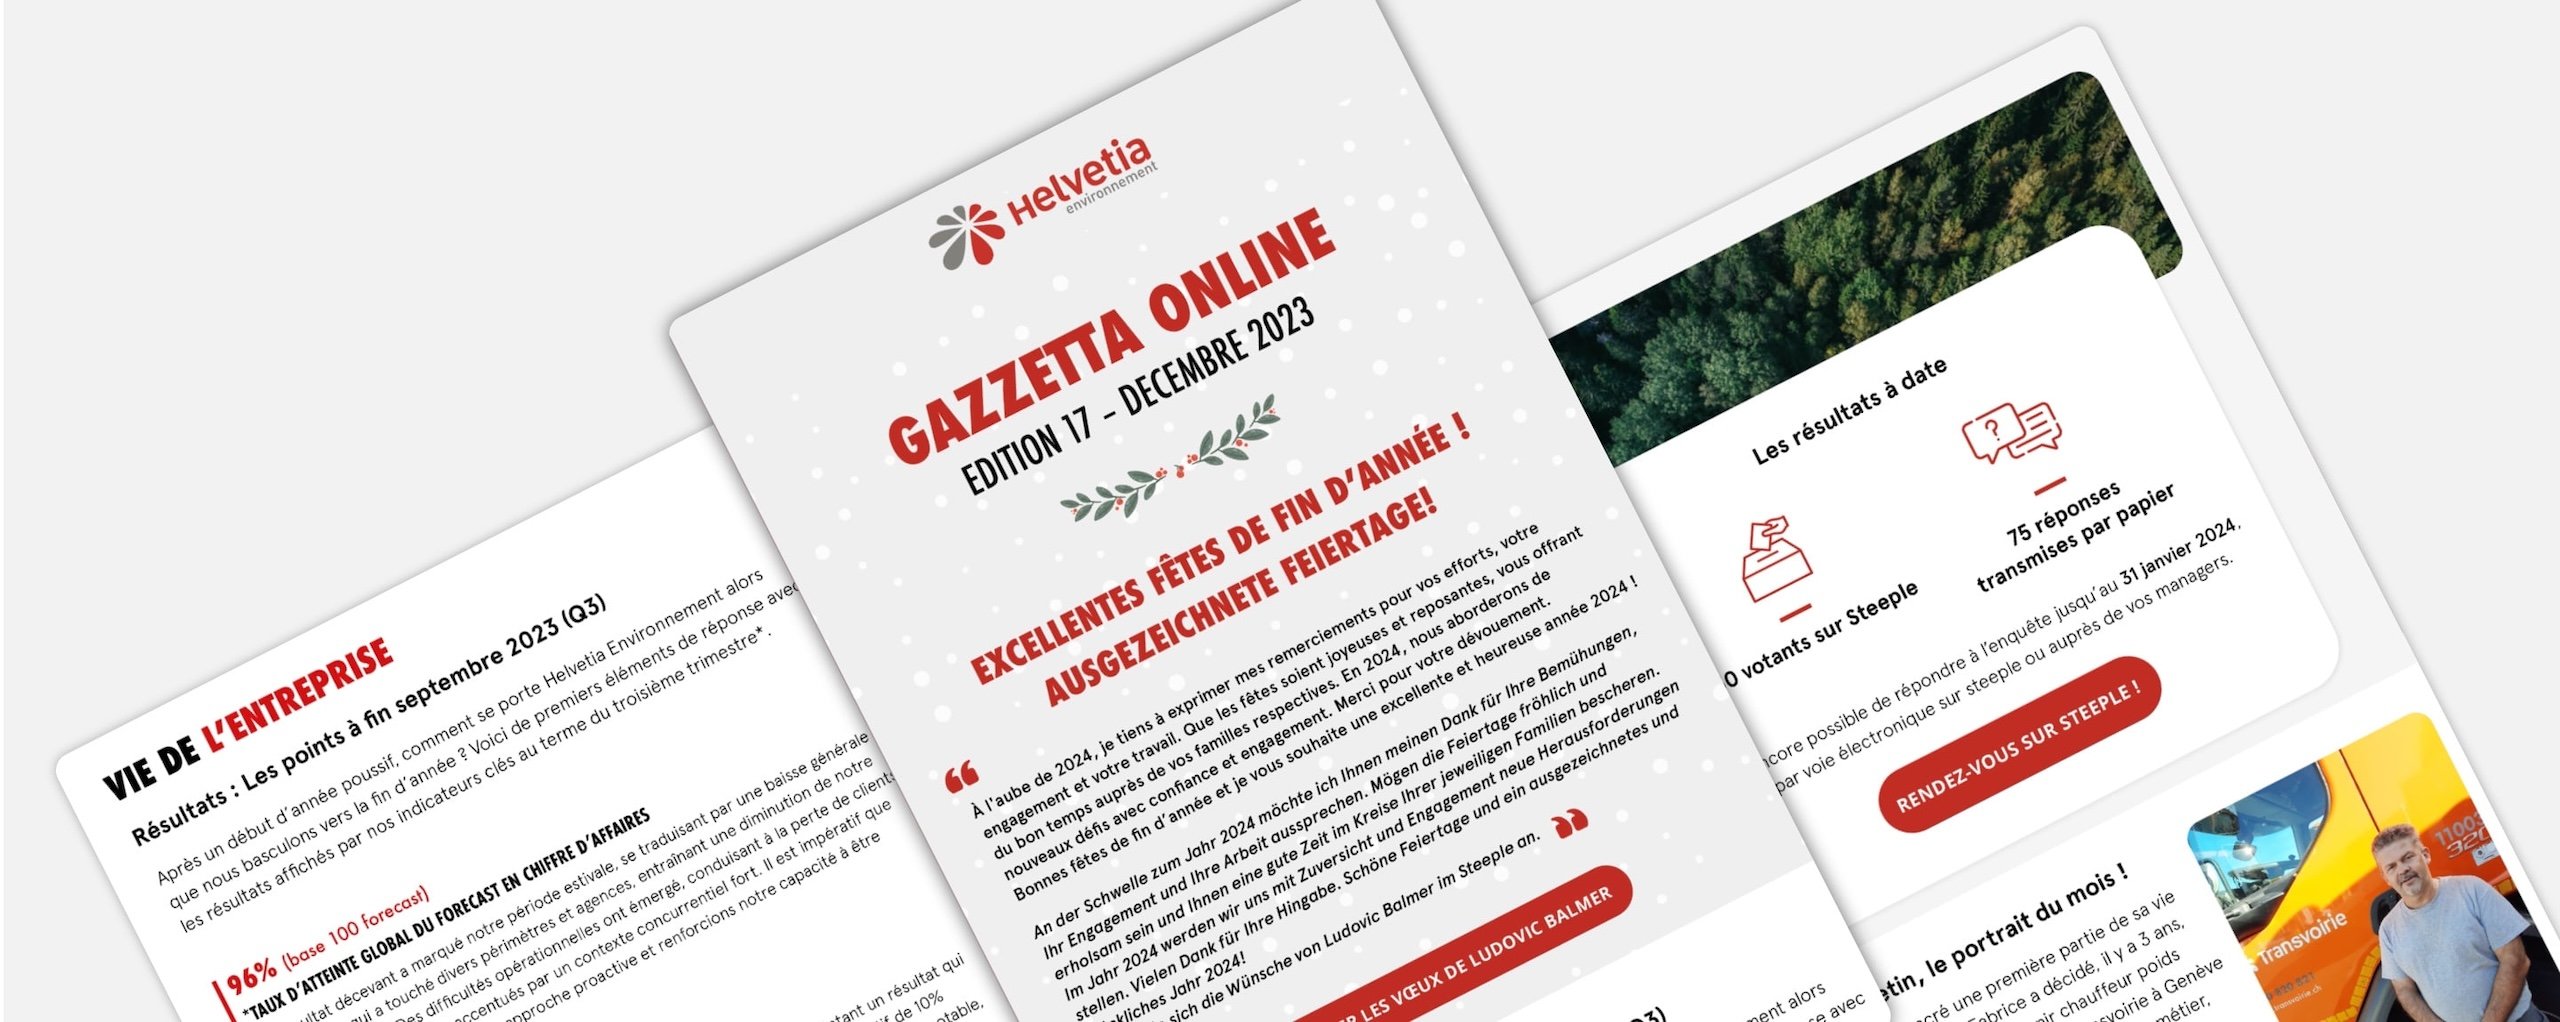 Habefast Study Case Helvetia Environnement Gazzetta Online